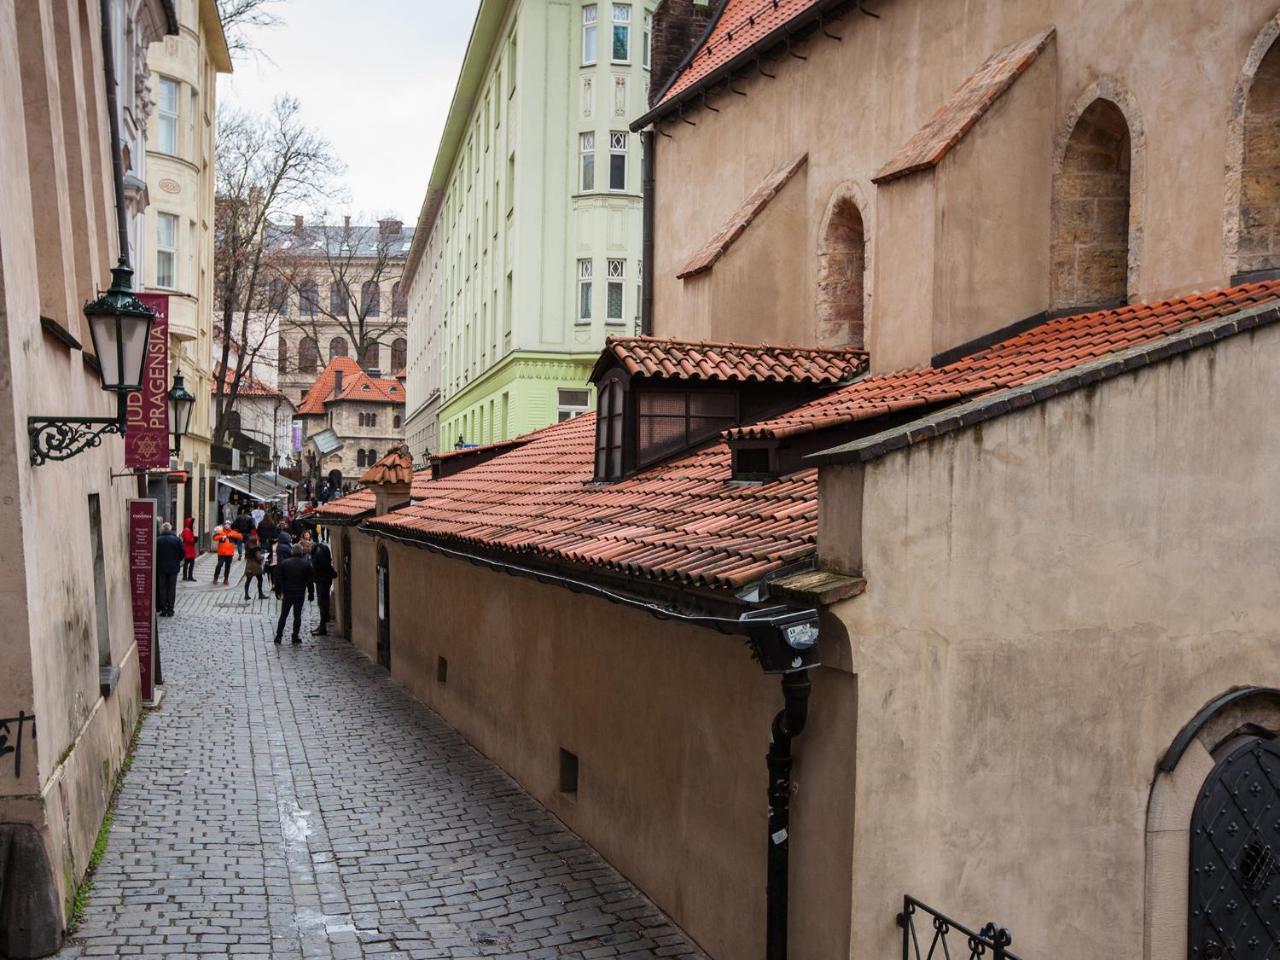 Golden Prague Rooms Eksteriør billede